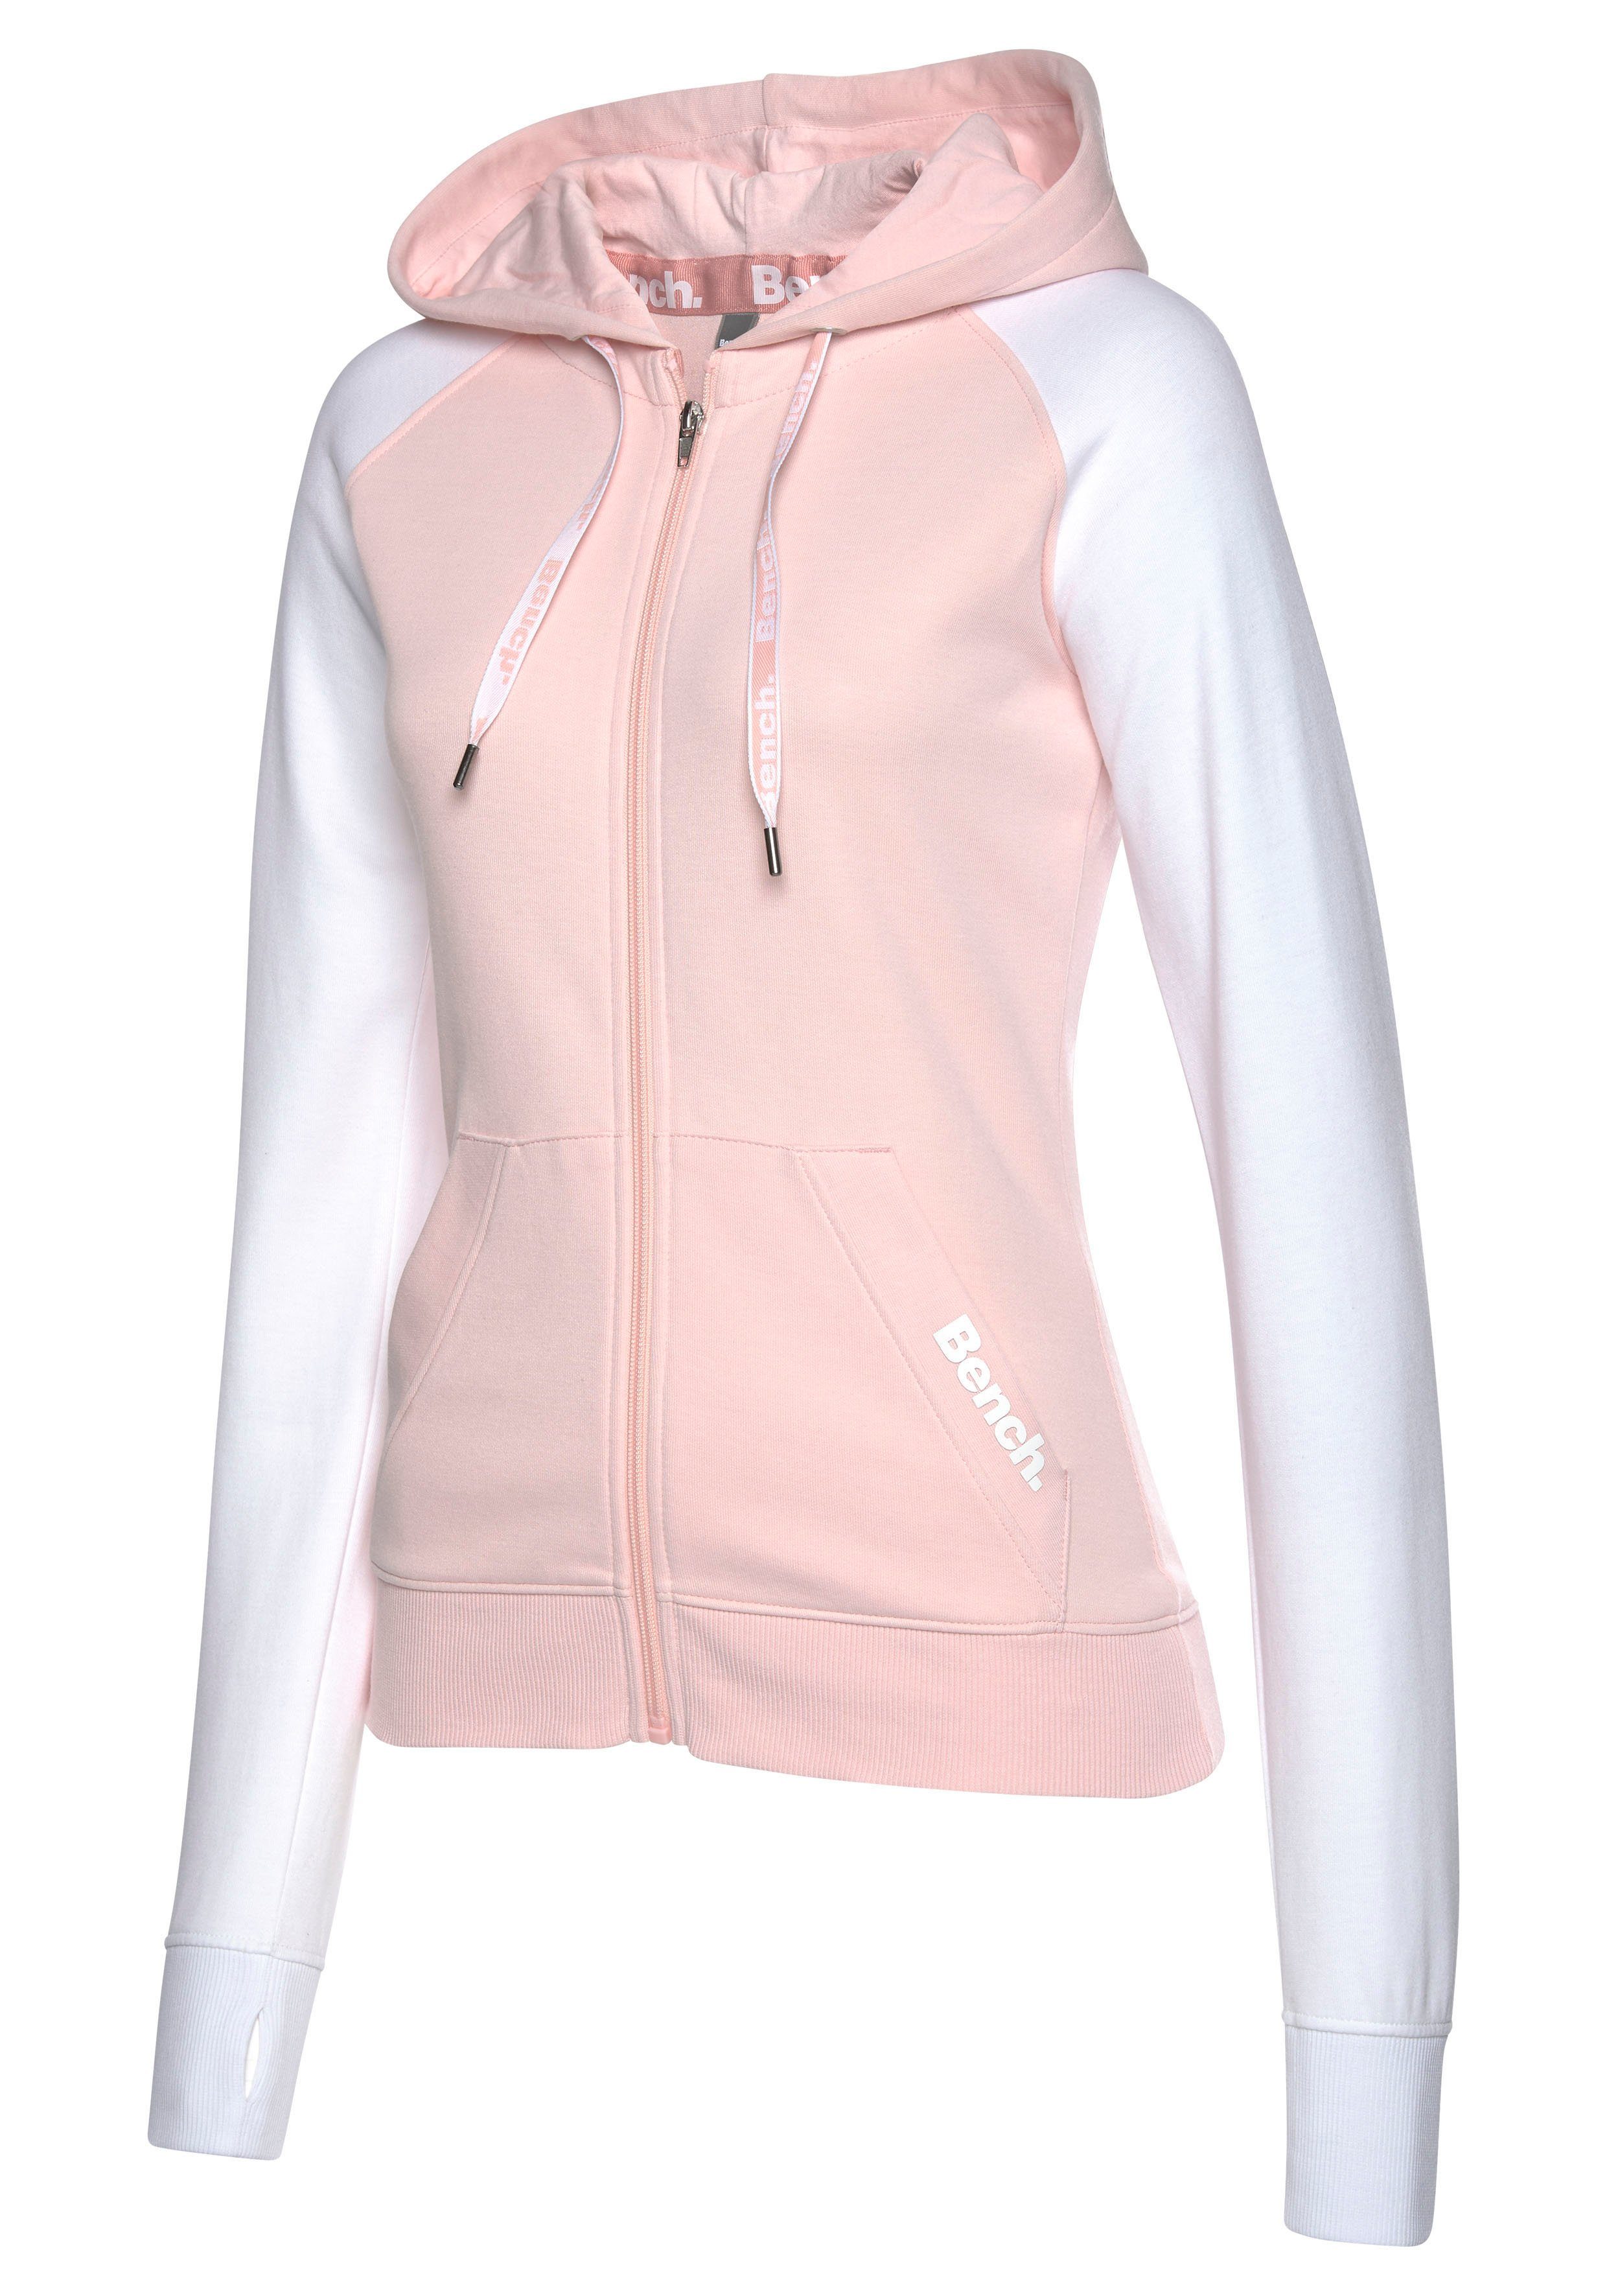 Bench. Loungewear Kapuzensweatjacke mit farblich Ärmeln, rosa-weiß abgesetzten Loungeanzug